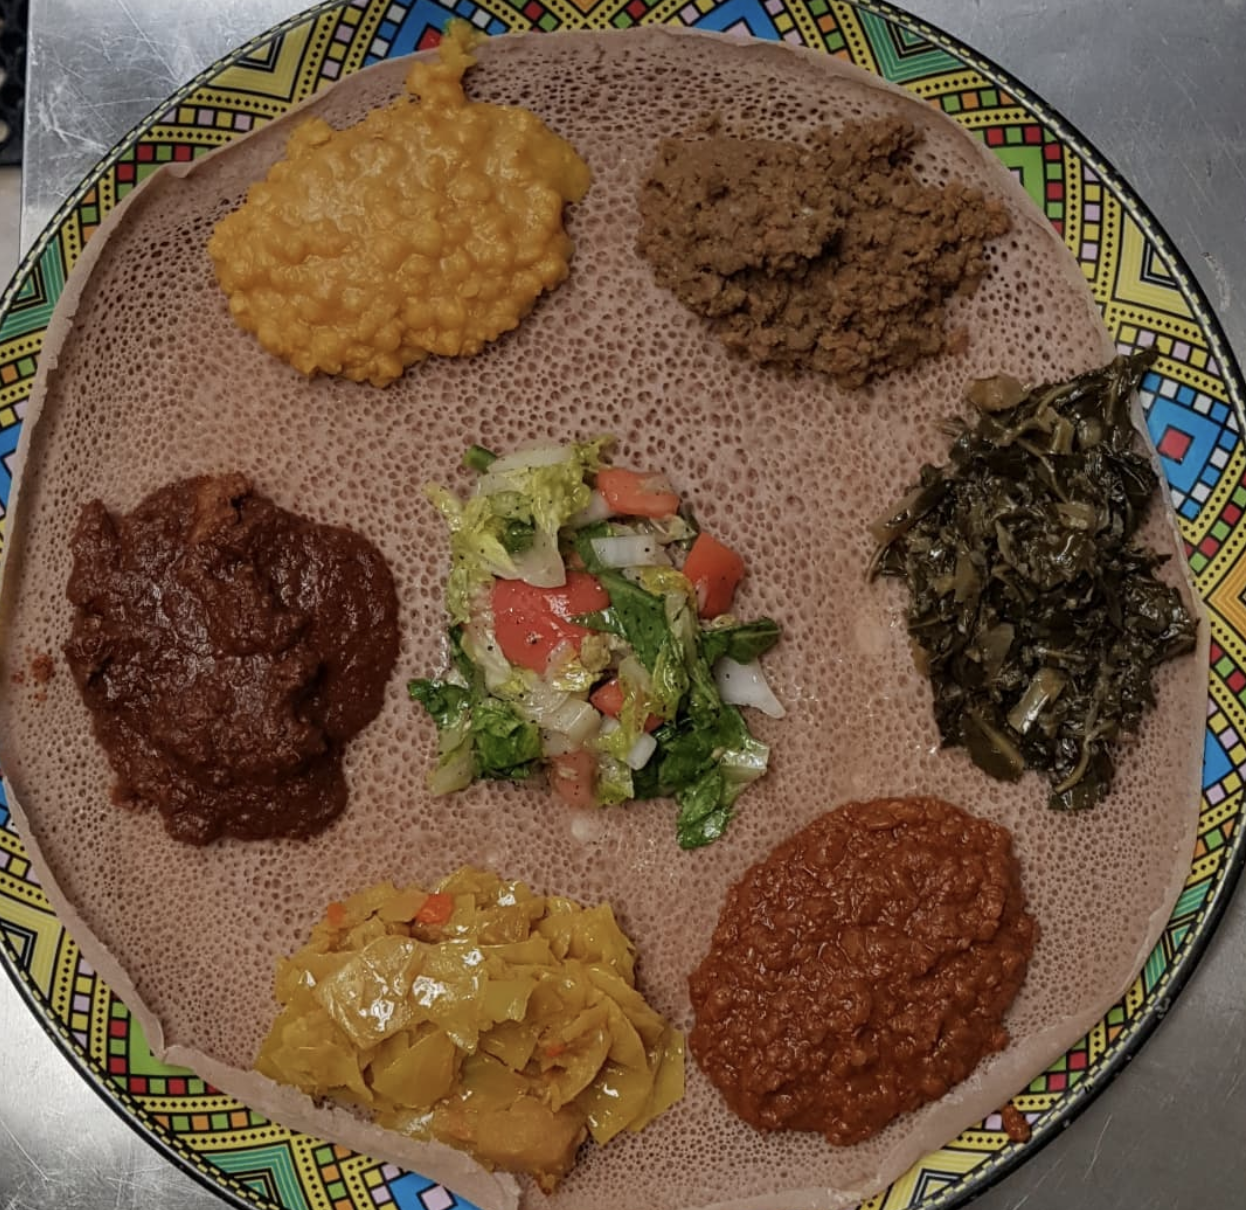 Dukem Ethiopian